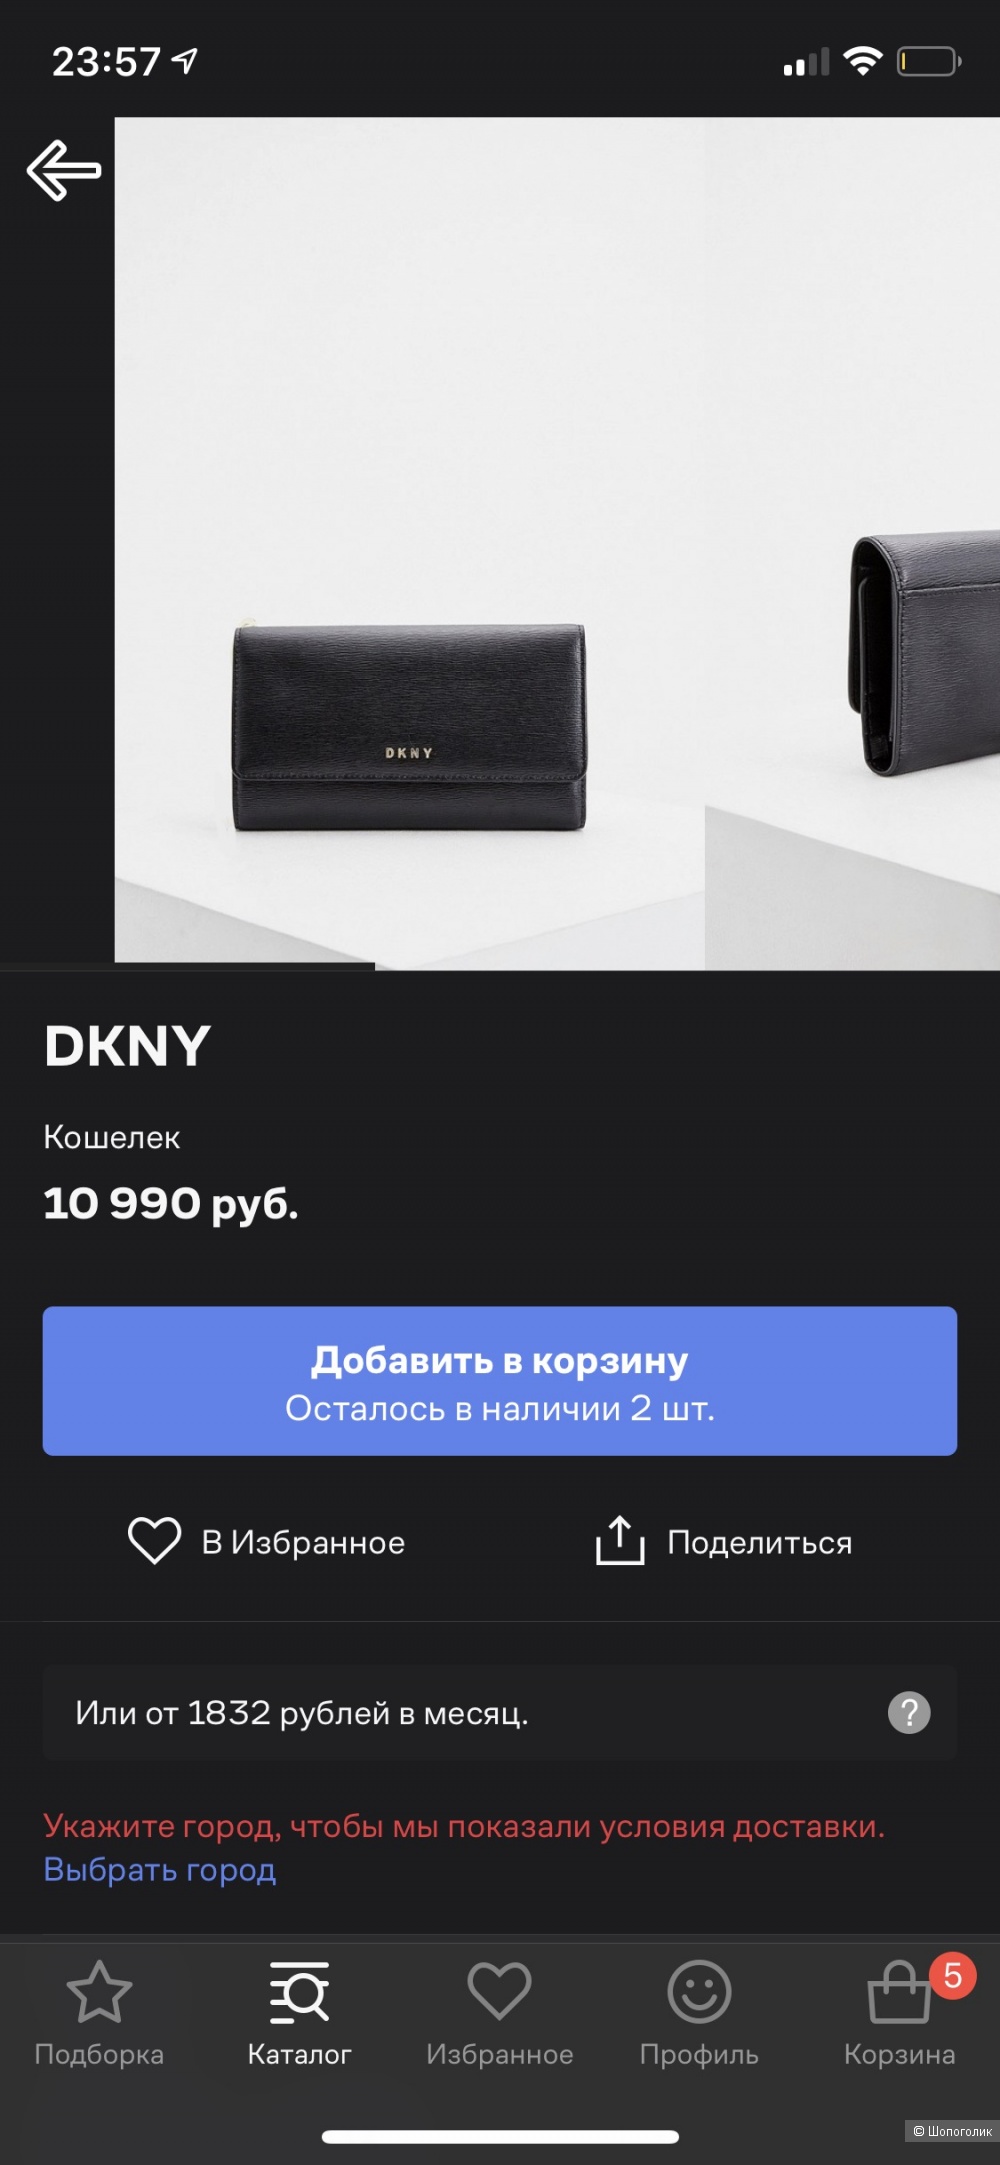 DKNY Кошелёк